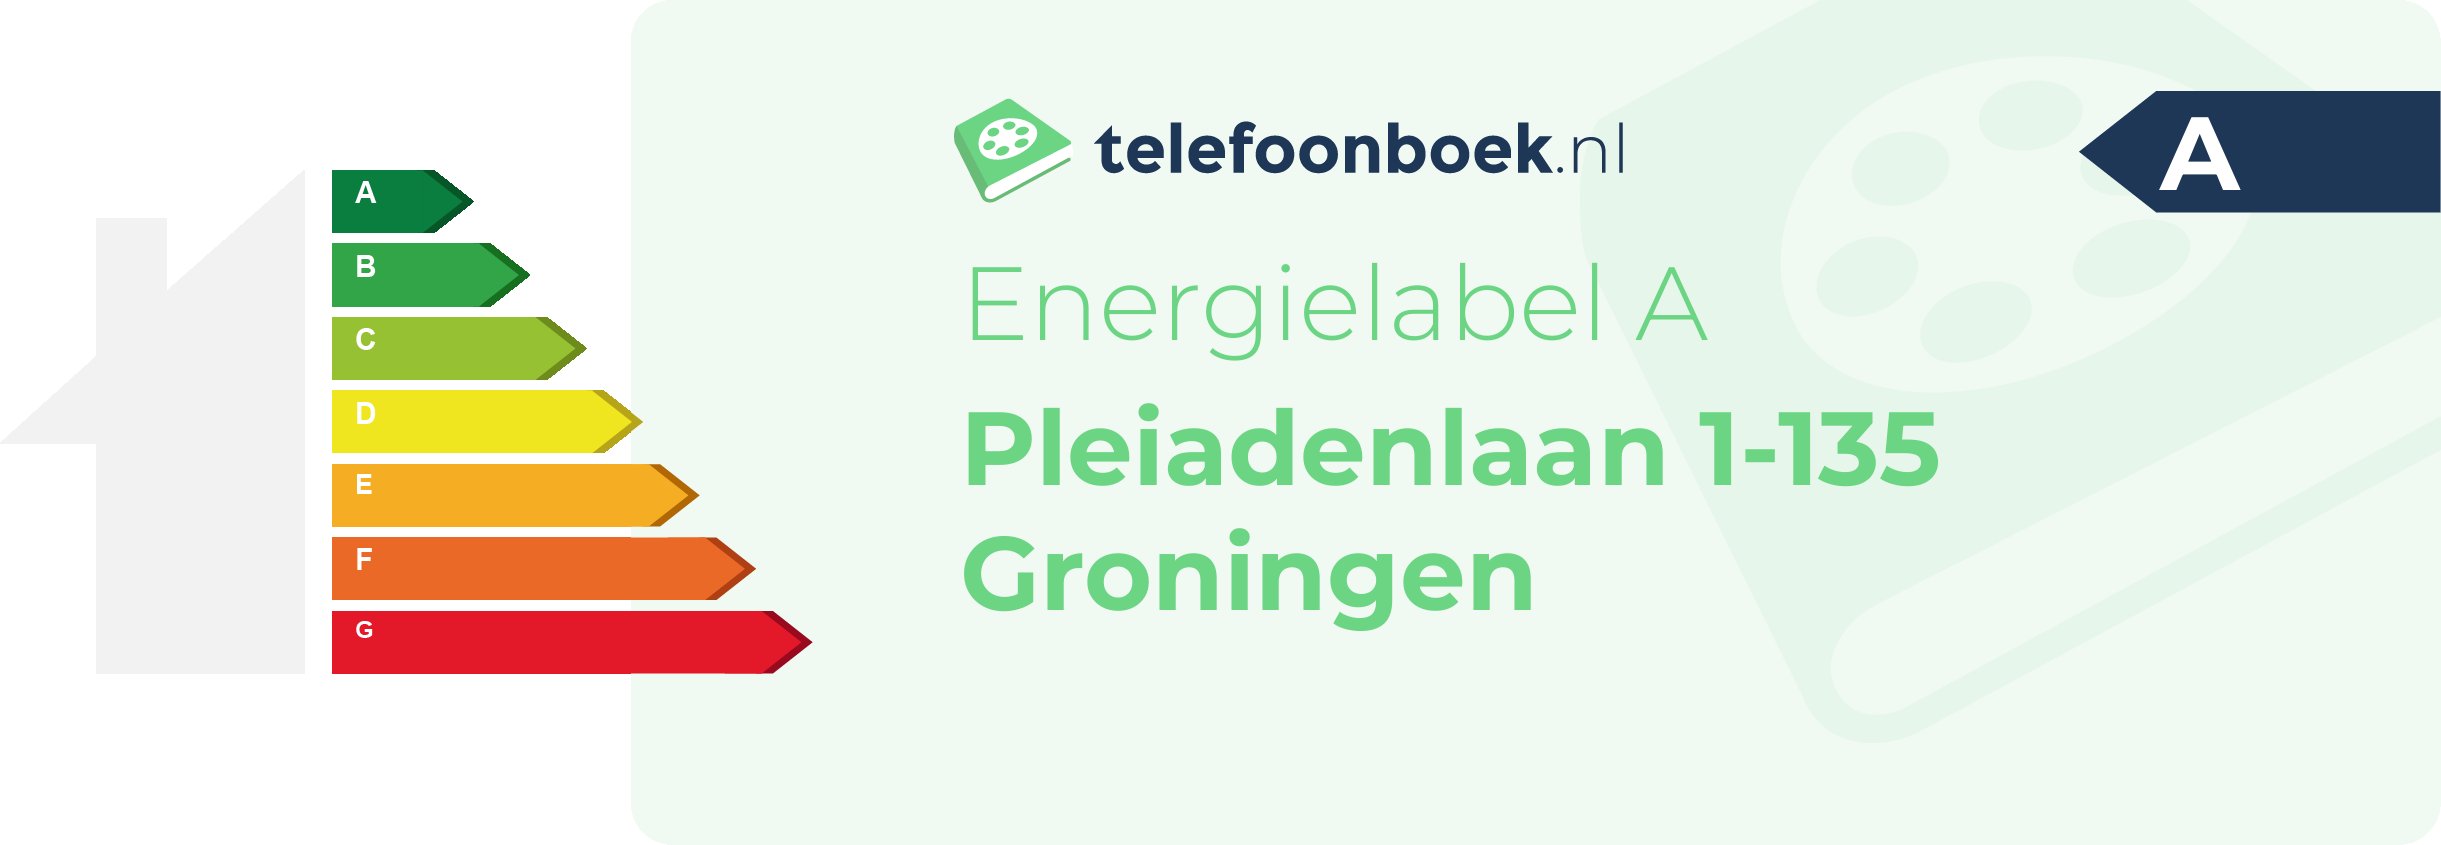 Energielabel Pleiadenlaan 1-135 Groningen